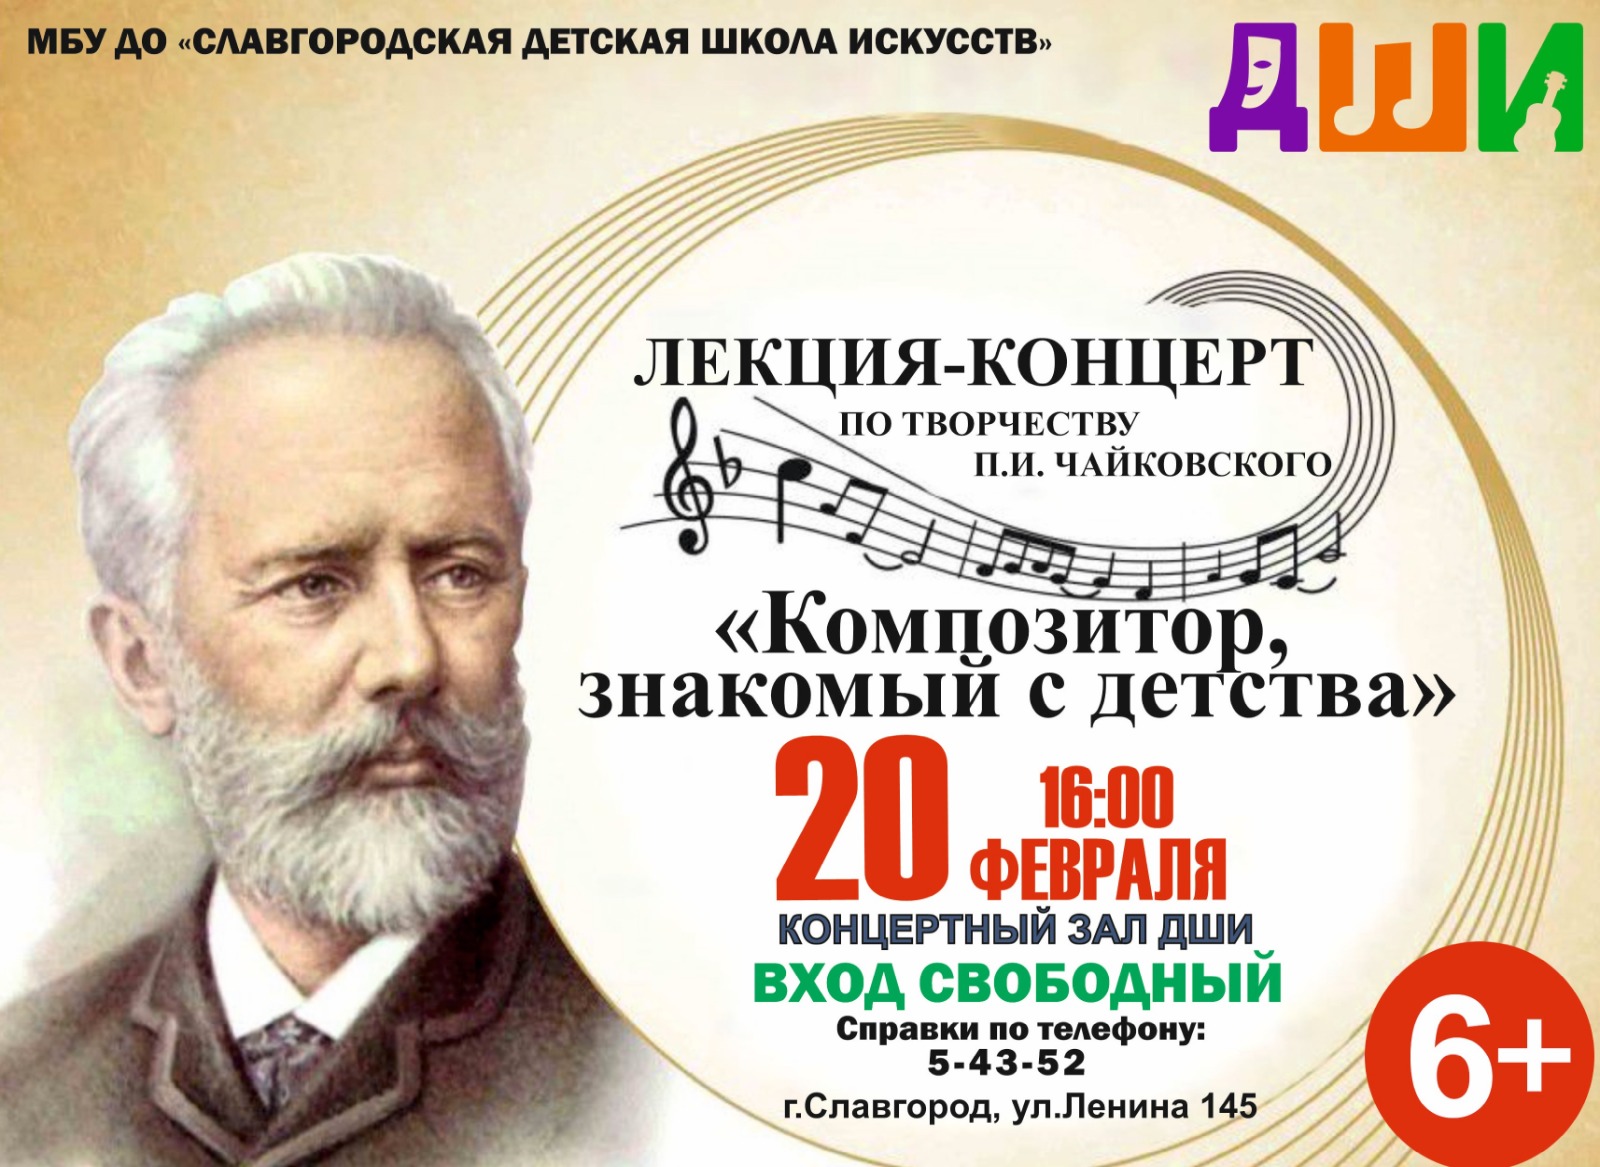 В Славгороде состоится лекция-концерт по творчеству П.И. Чайковского.